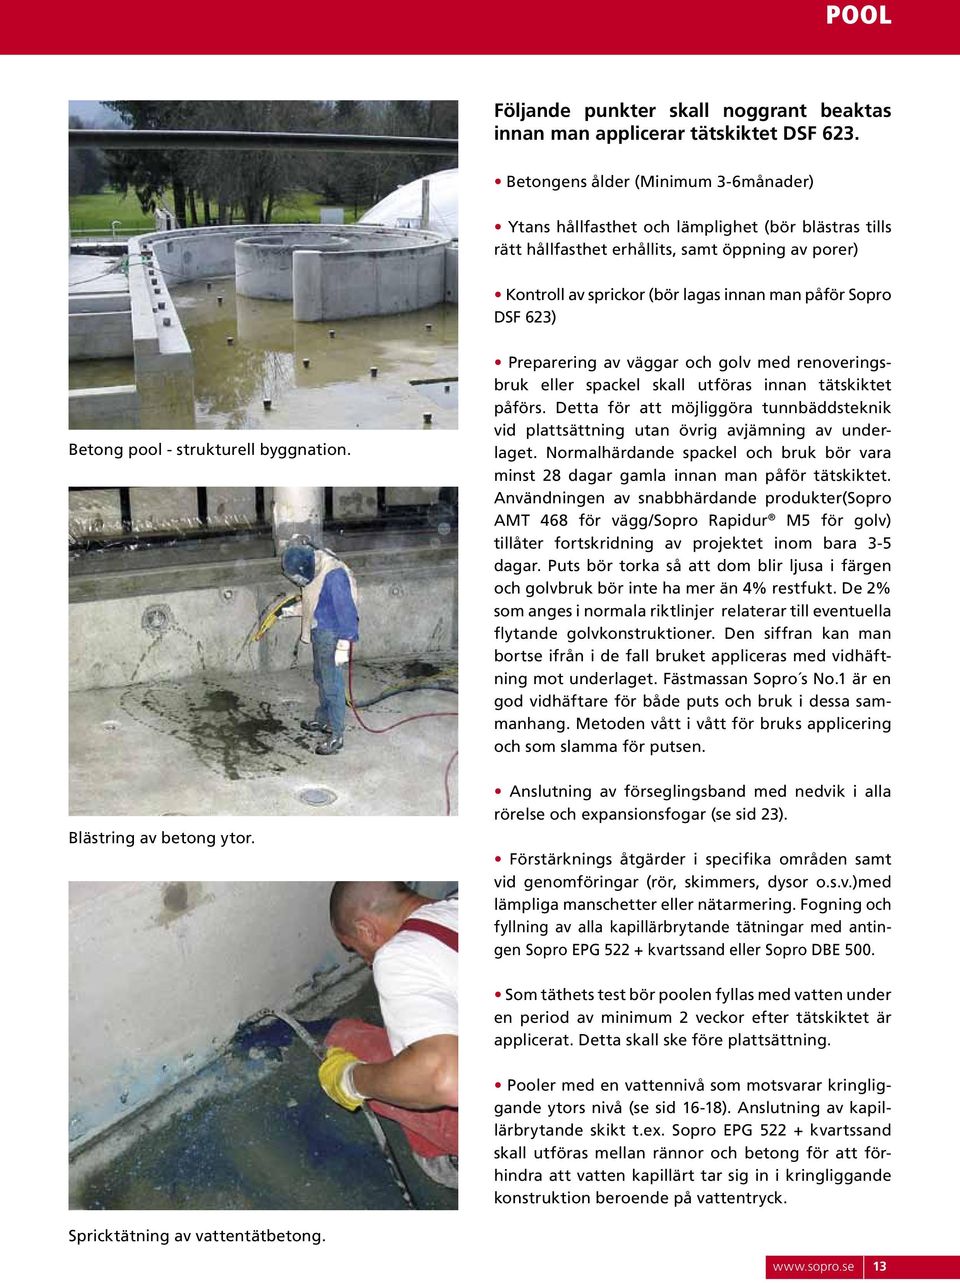 6) Betong pool - strukturell byggnation. Preparering av väggar och golv med renoveringsbruk eller spackel skall utföras innan tätskiktet påförs.